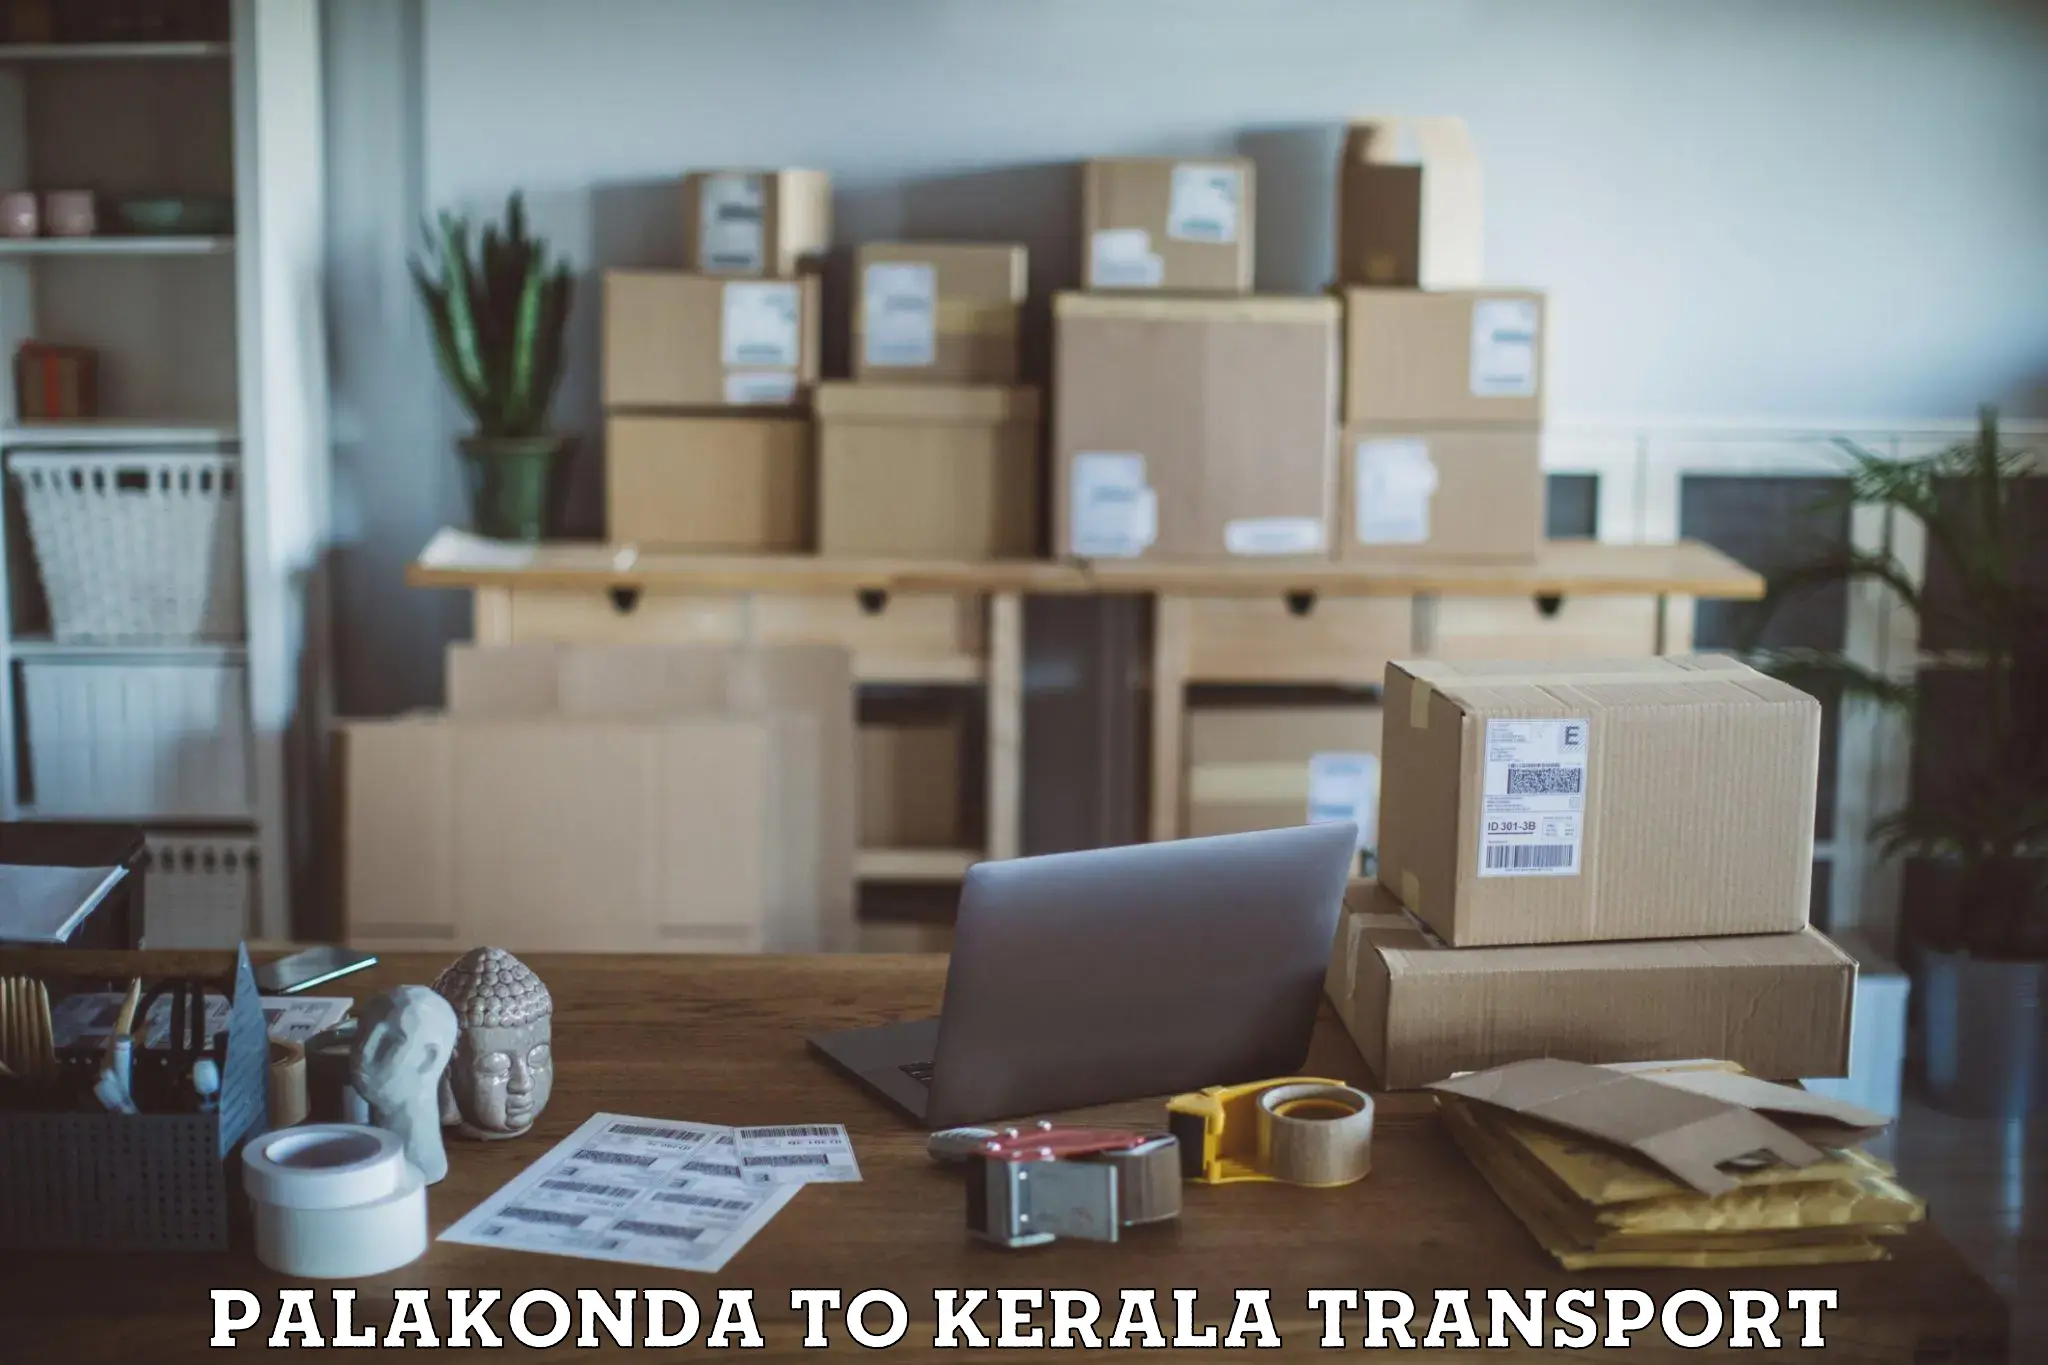 Pick up transport service Palakonda to Iritty